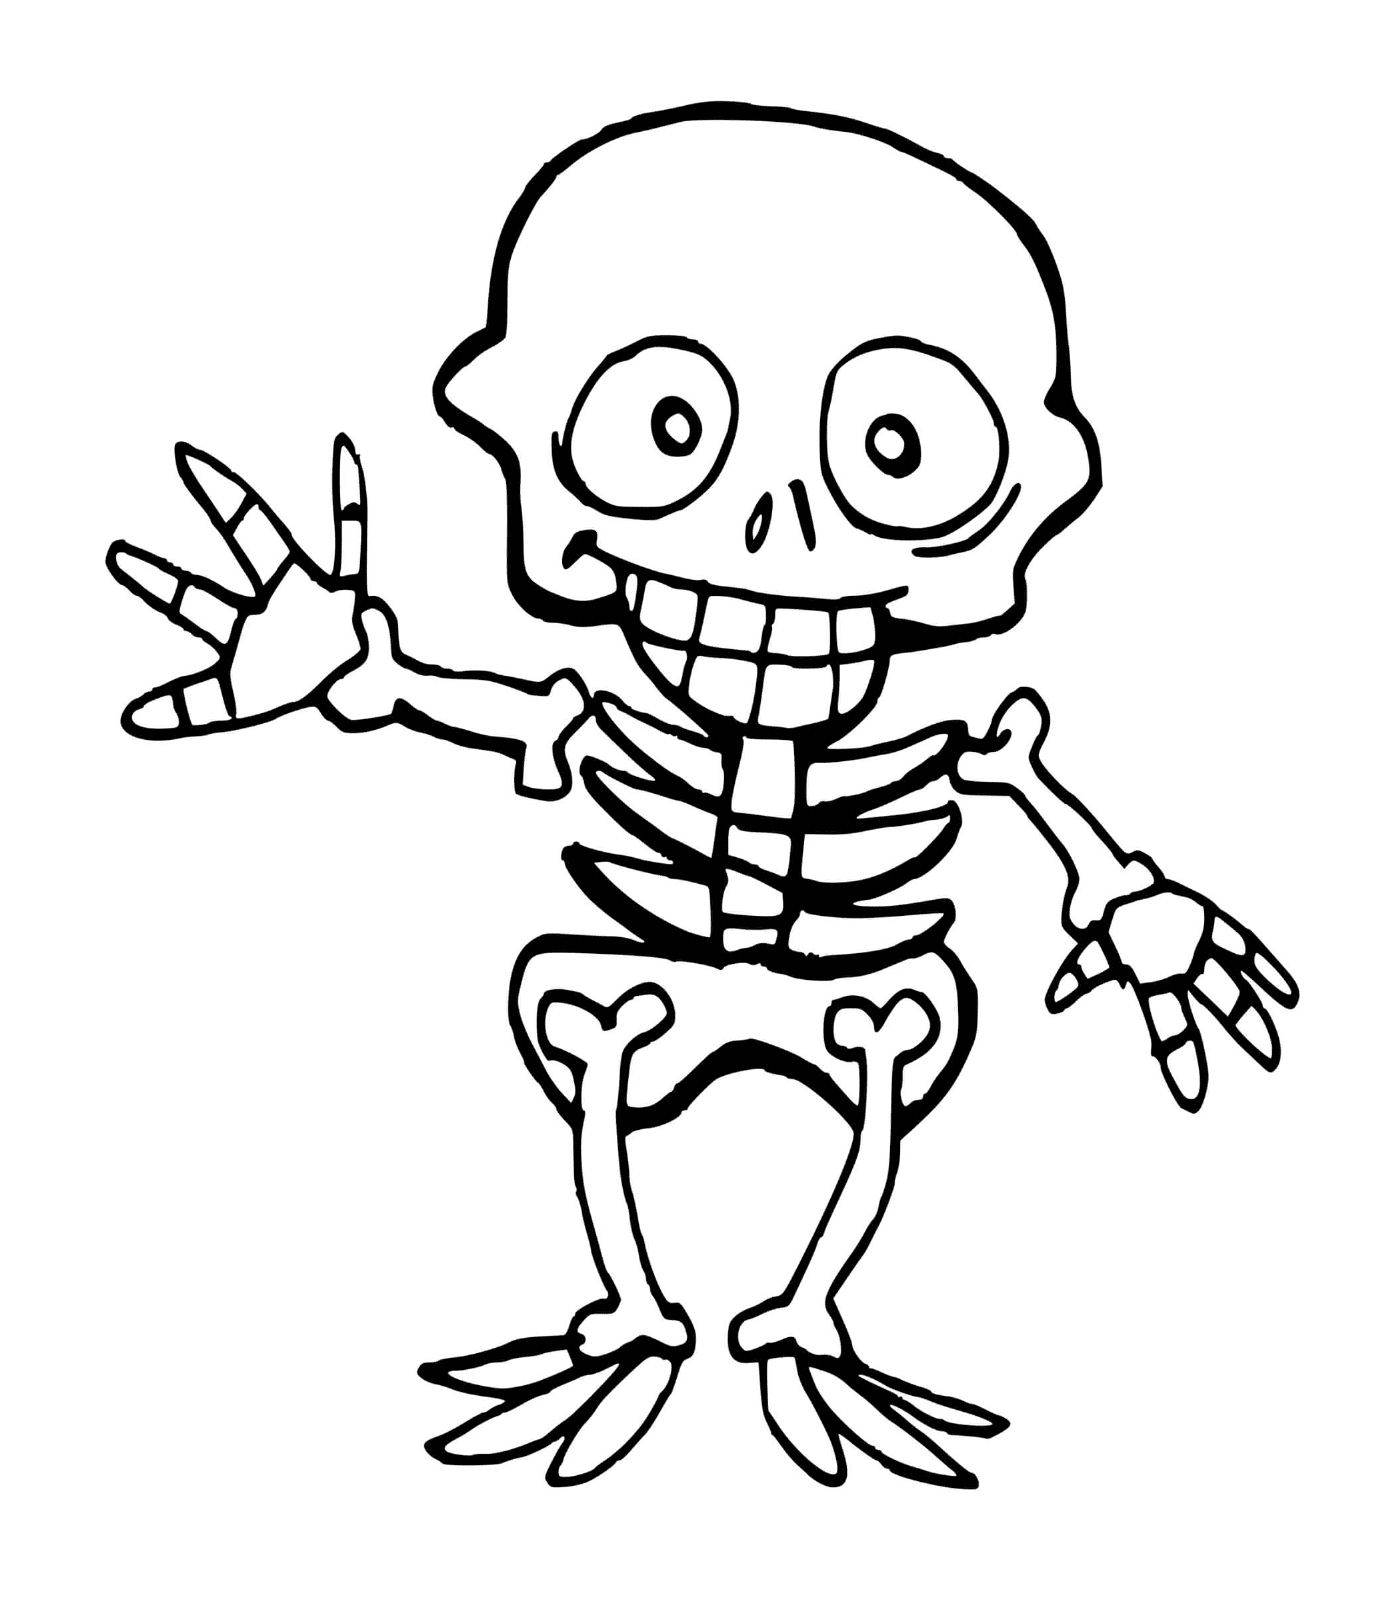  Child skeleton for Halloween, hands up 